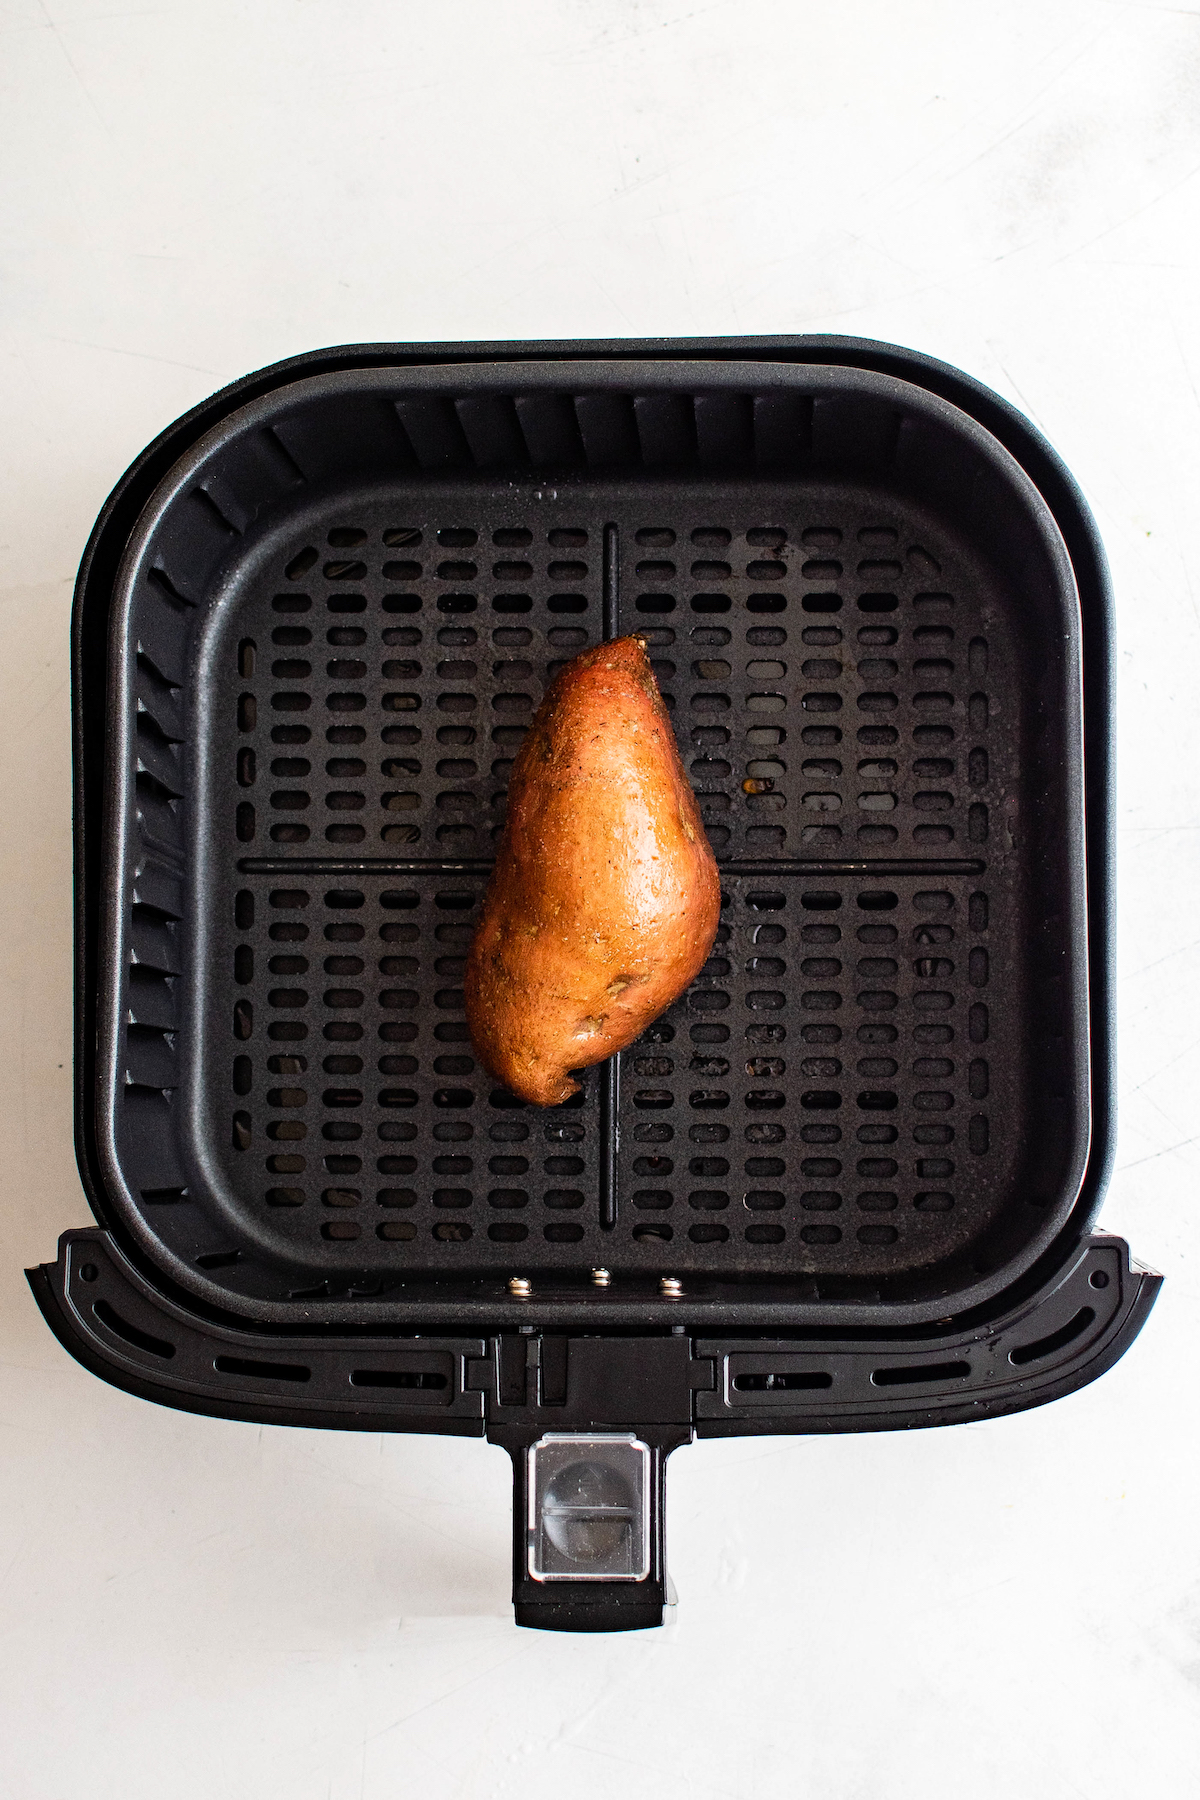 A sweet potato in an air fryer basket.